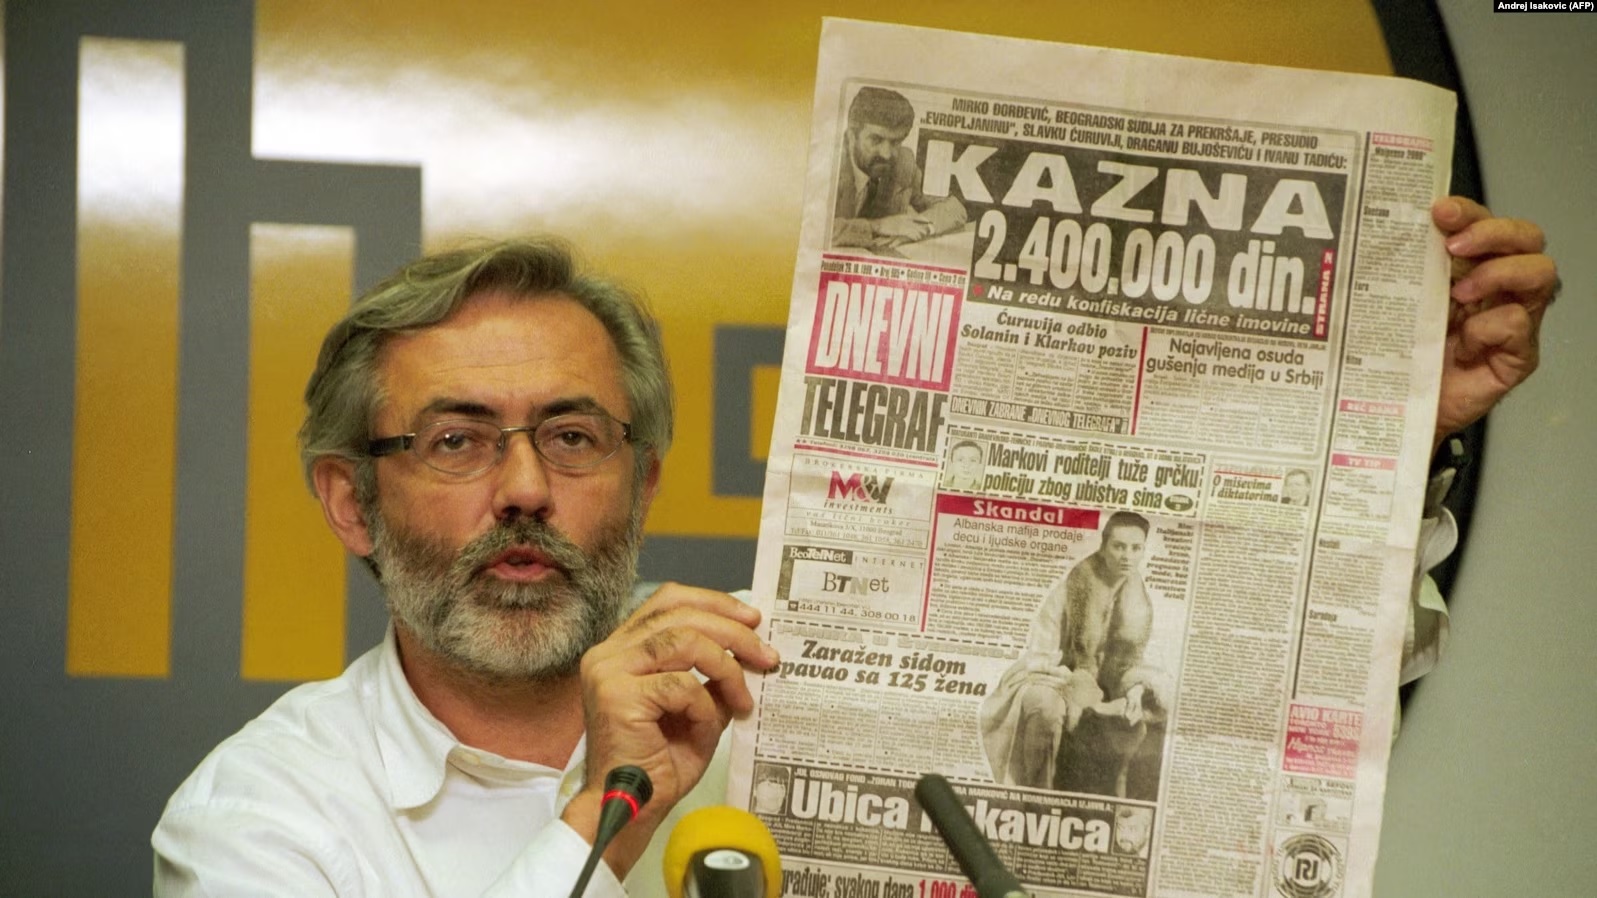 Kryeredaktori dhe pronari i gazetës serbe, Dnevni Telegraf (Telegrafi Ditor), Slavko Curuvija gjatë një konference për media, Beograd nëntor 1998.